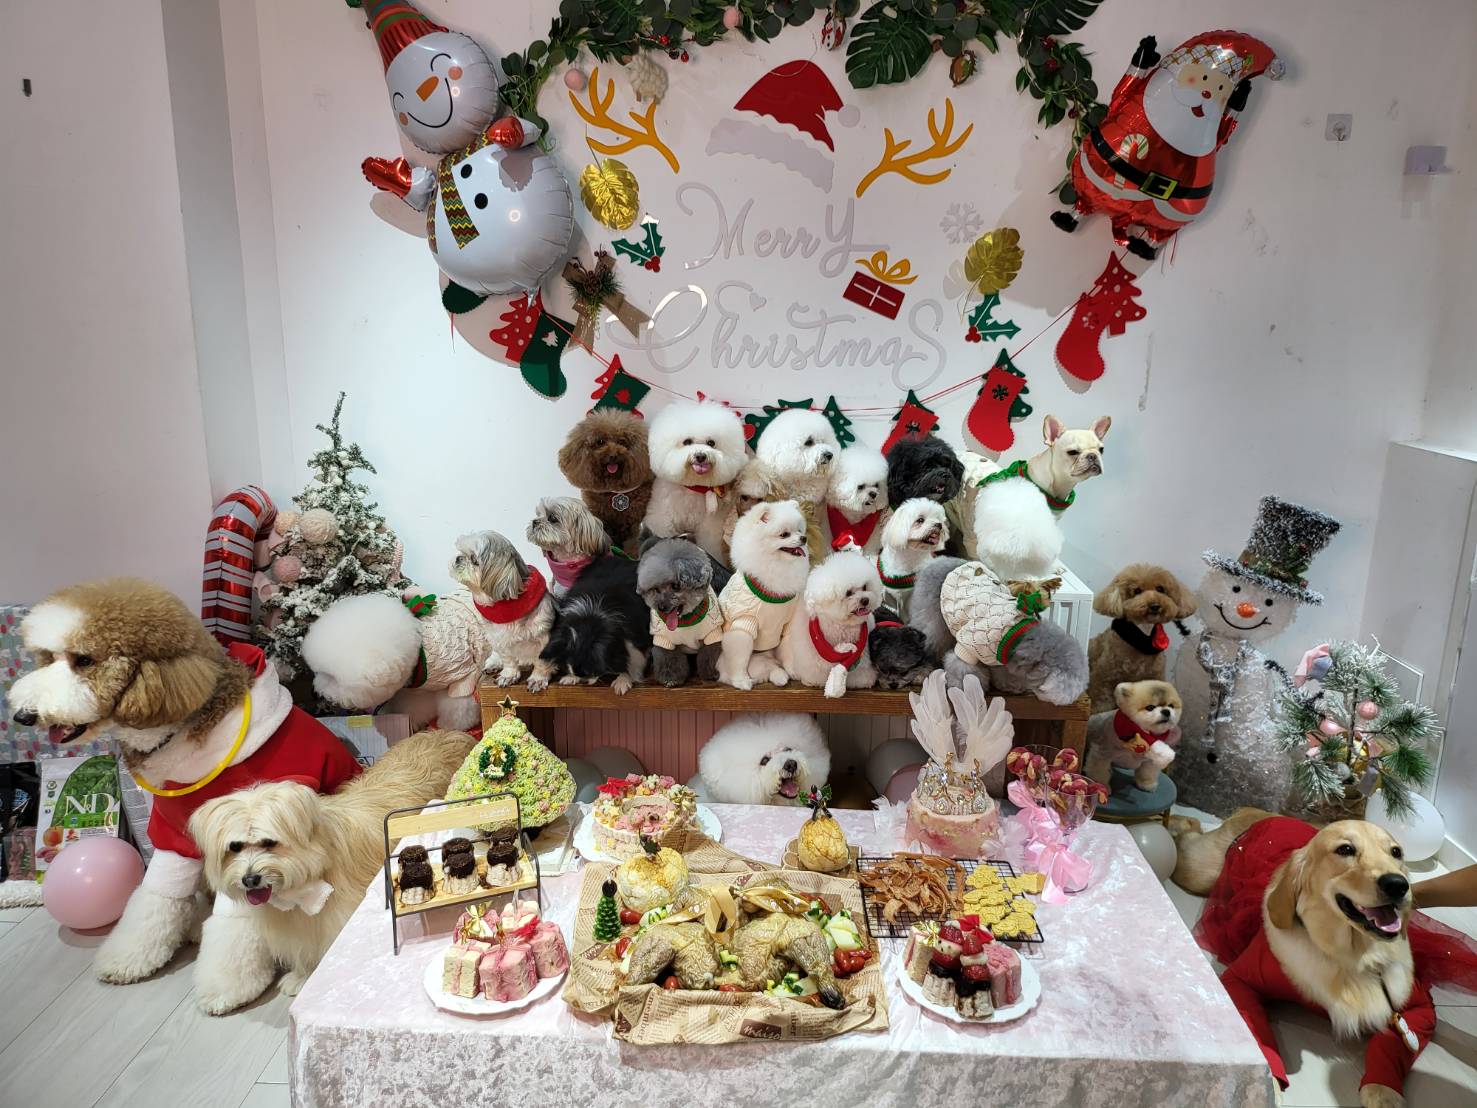 Show Lo menyelenggarakan pesta natal untuk anjing-anjing liar, menyerukan kepada semua orang untuk mengadopsi dan tidak menyerah. Sumber: Lesley